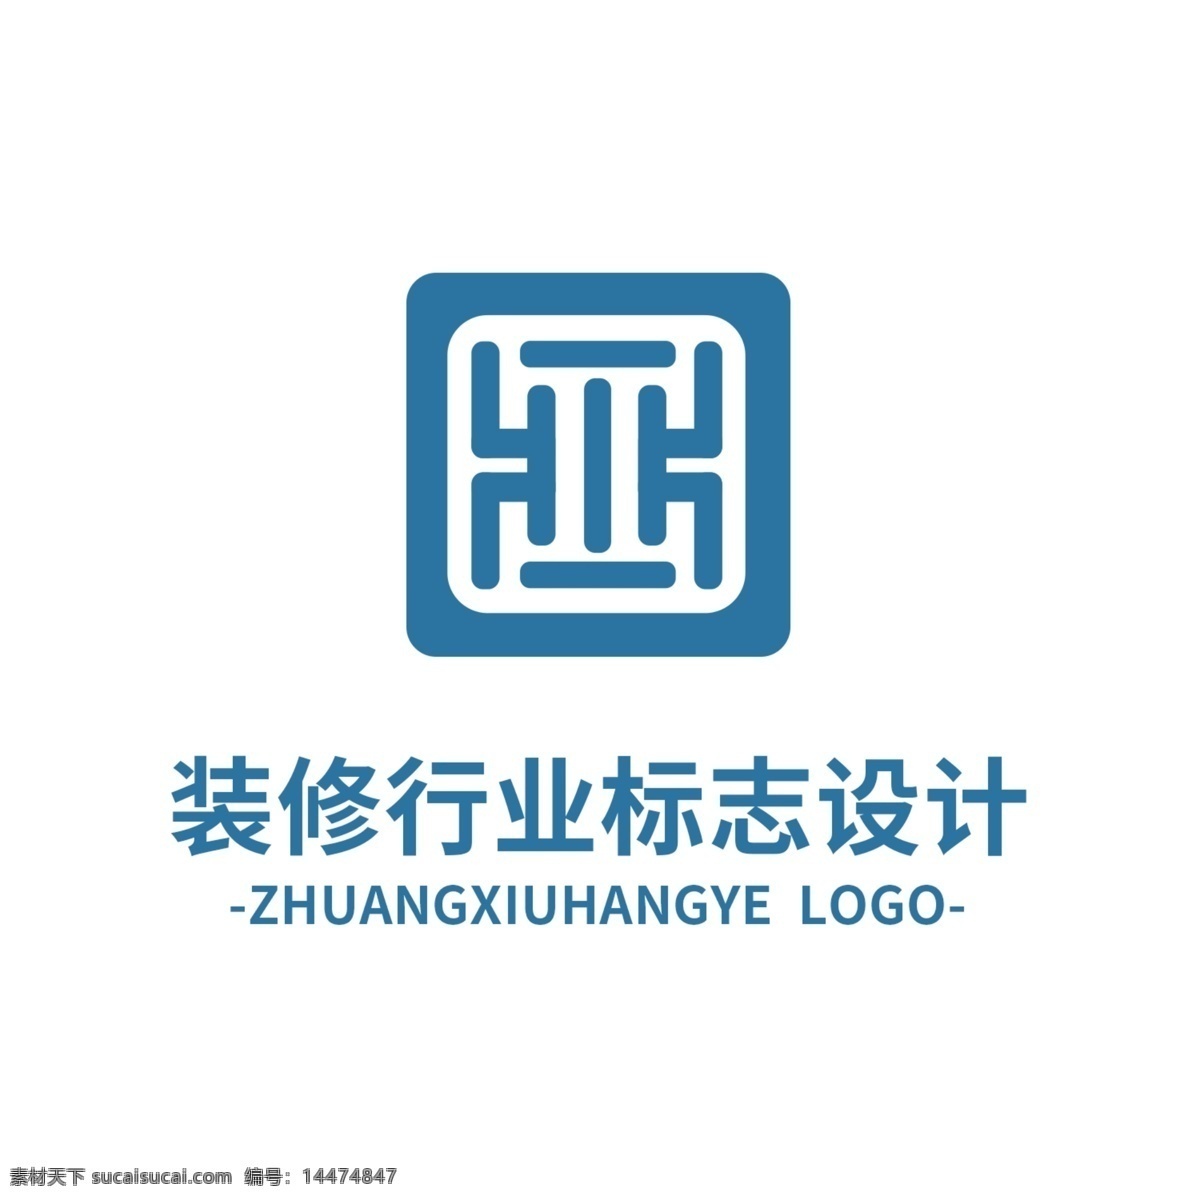 装修 行业 标志设计 logo 标志 行业标识 装潢 建筑 装饰